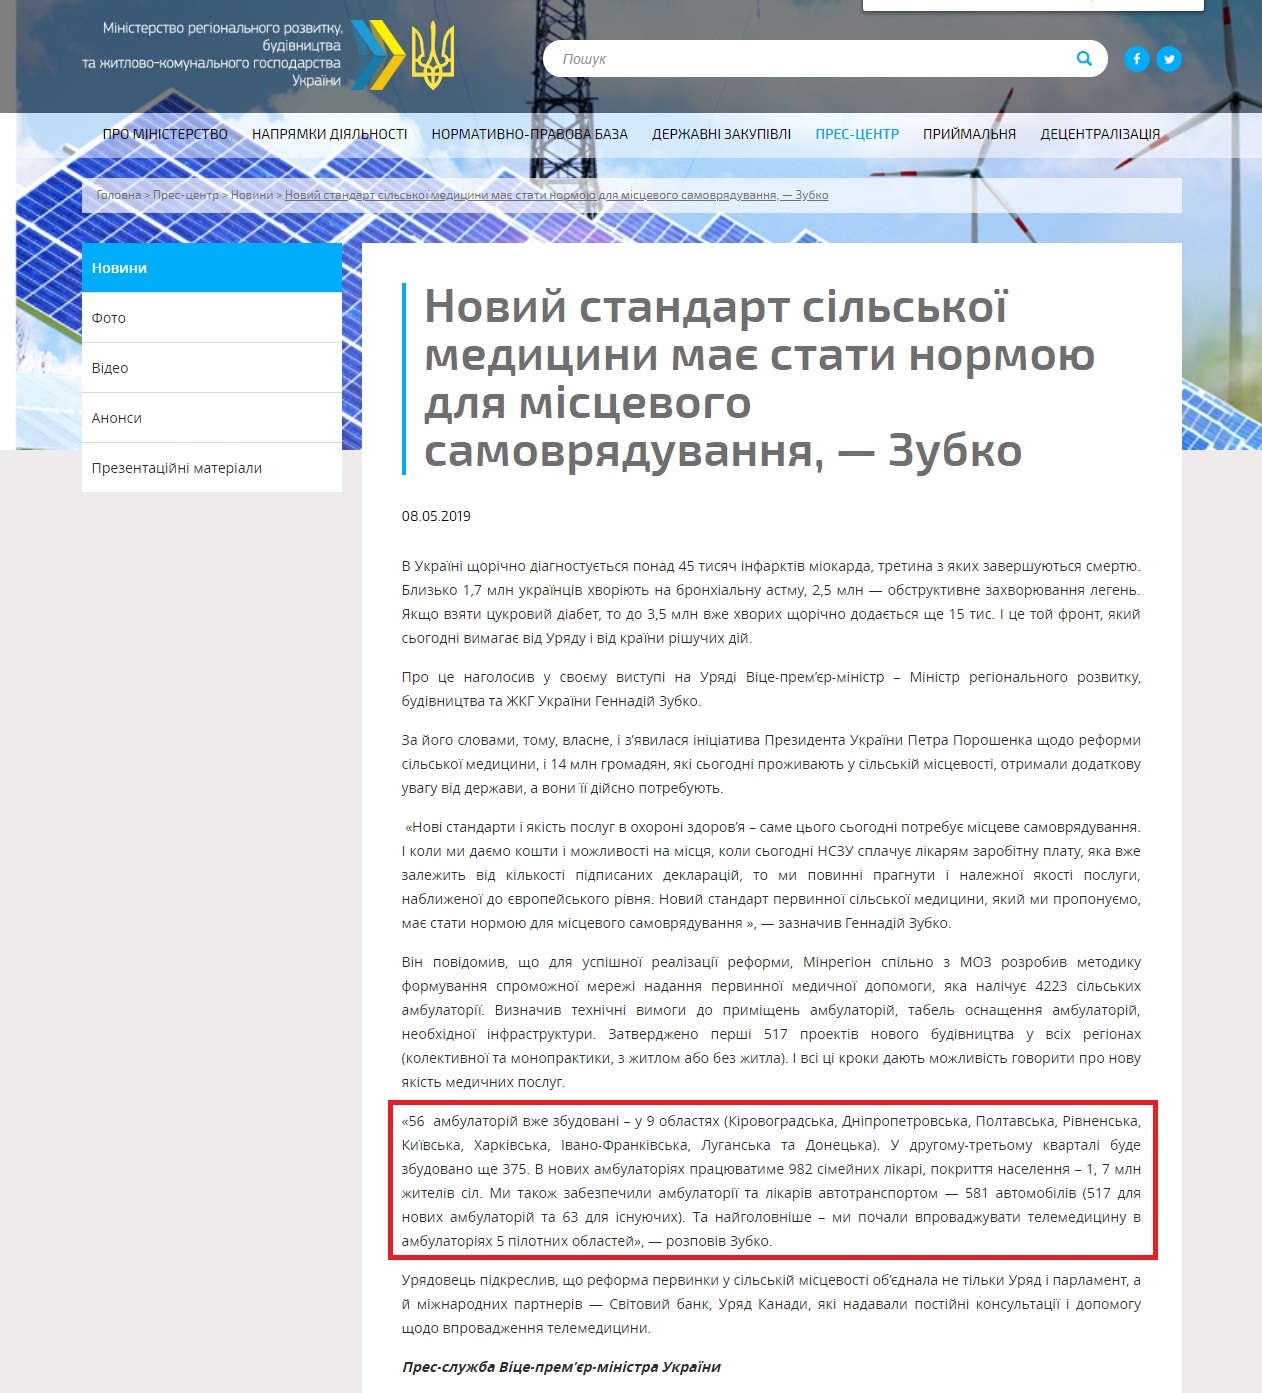 http://www.minregion.gov.ua/press/news/noviy-standart-silskoyi-meditsini-maye-stati-normoyu-dlya-mistsevogo-samovryaduvannya-zubko/